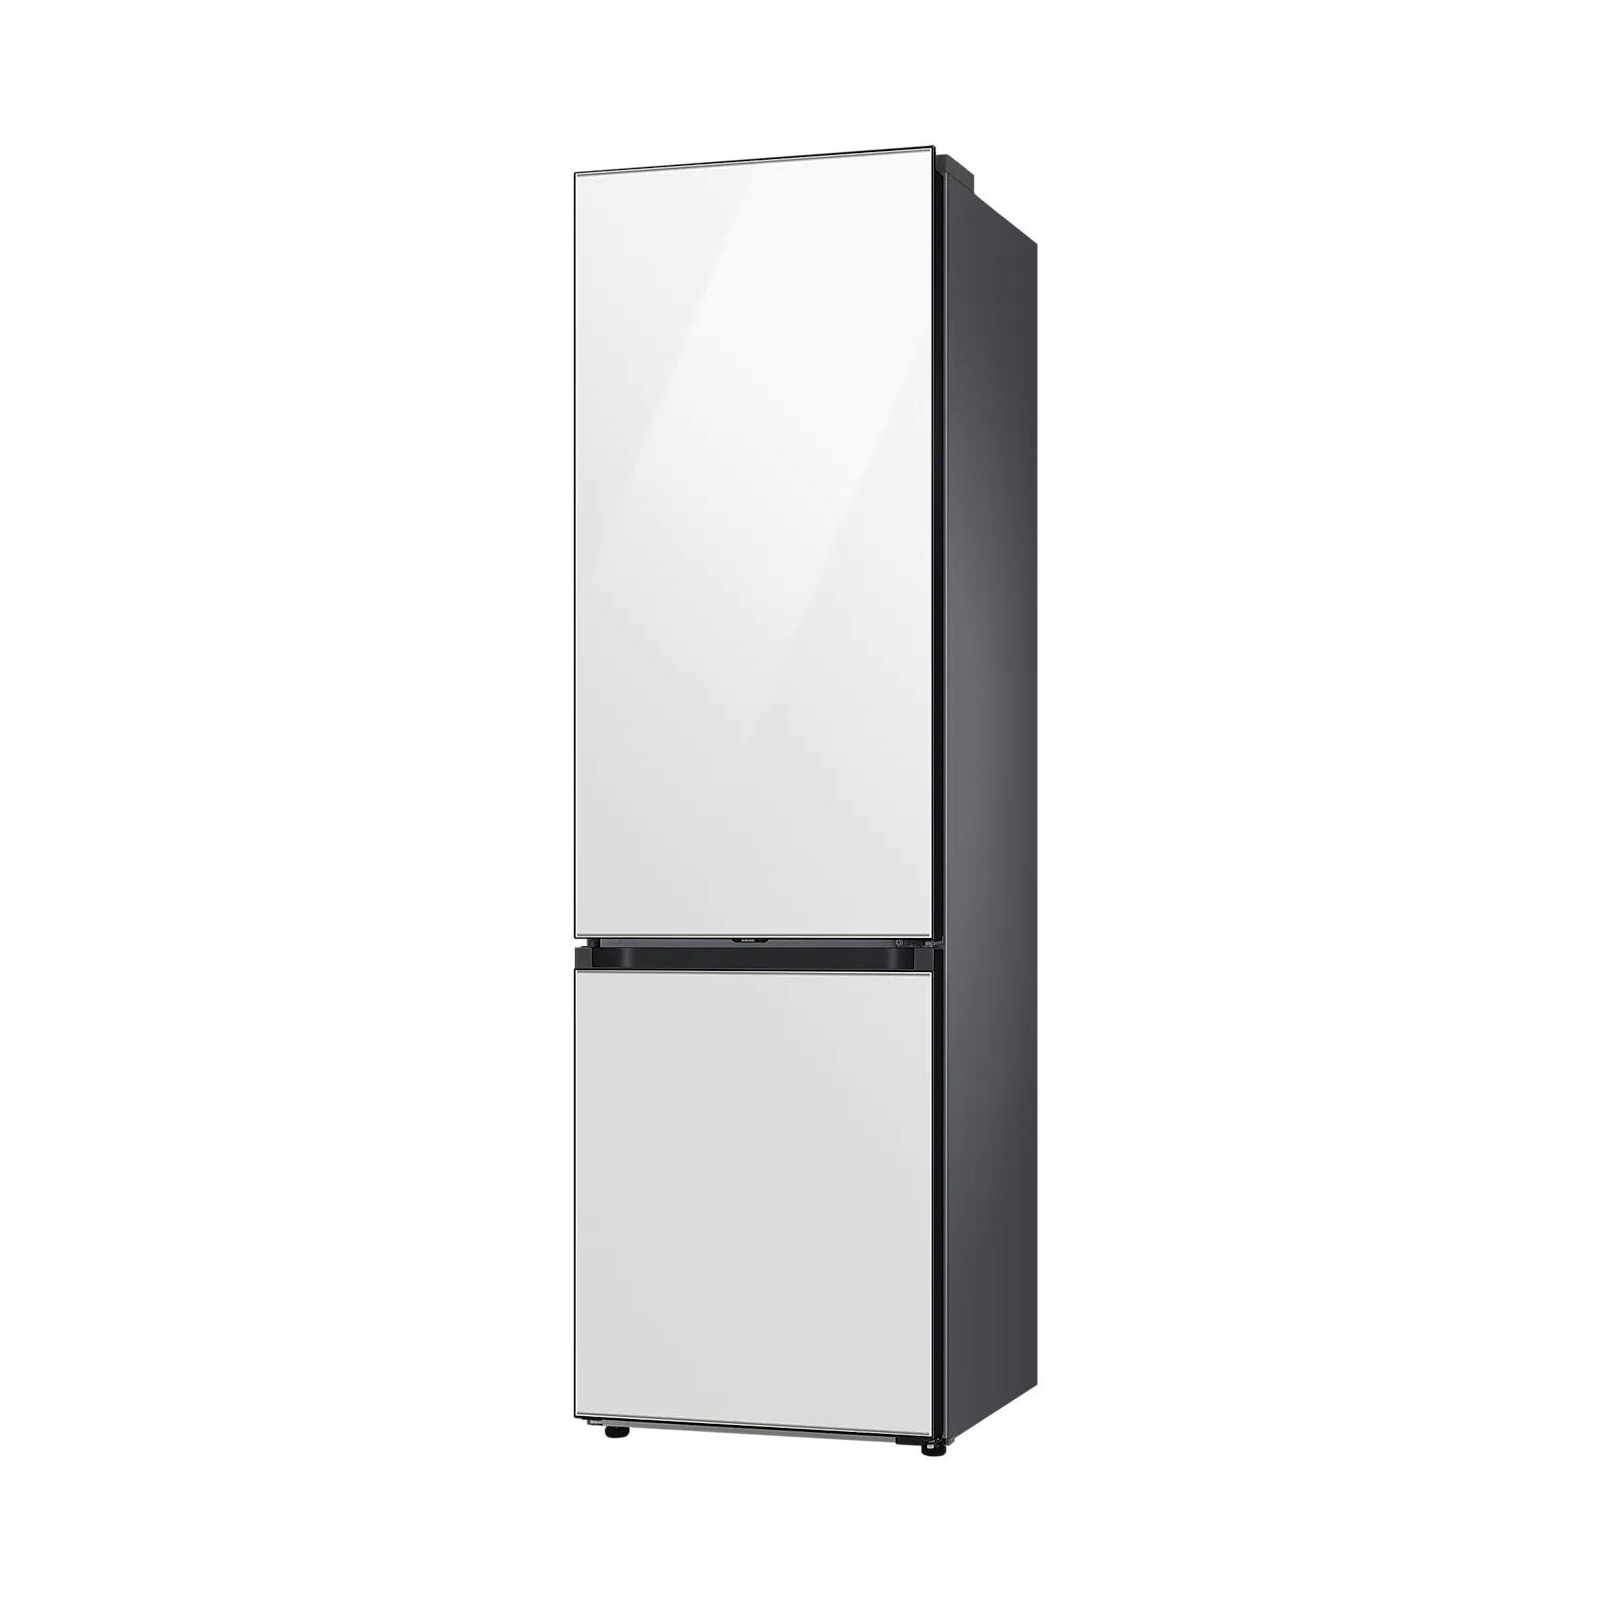 Холодильник Samsung RB38A6B6212/UA изображение 2